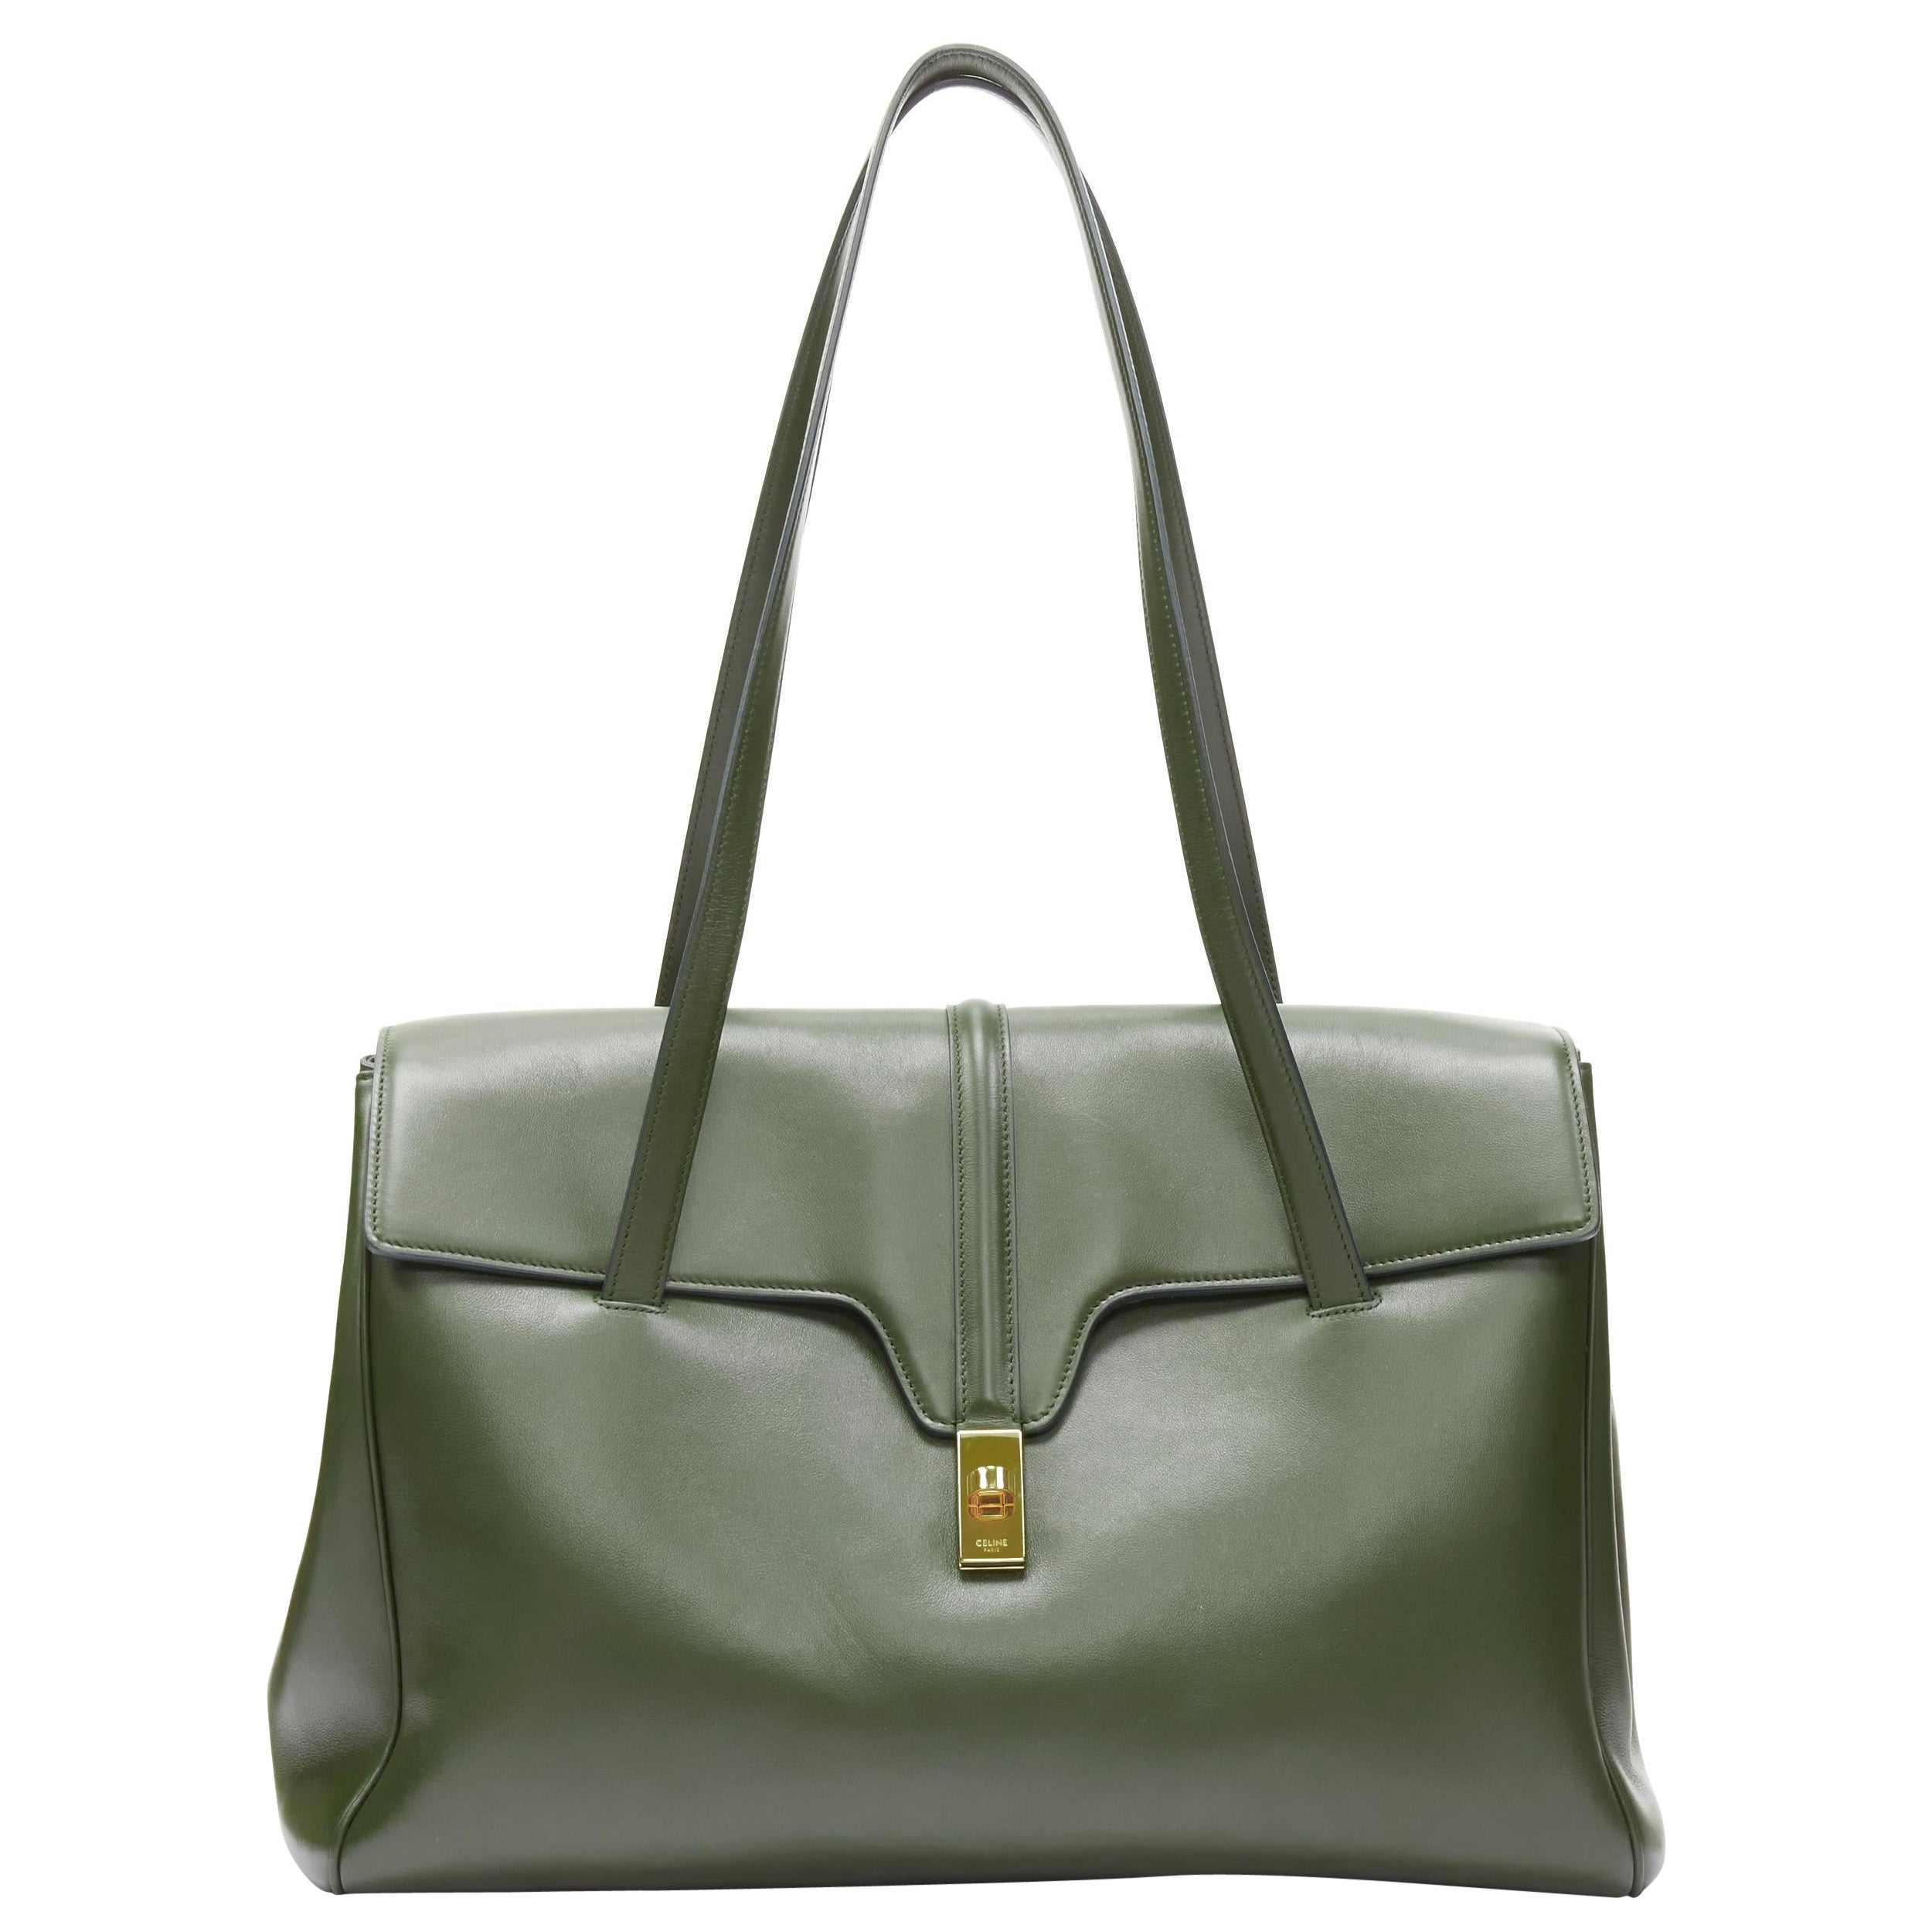 CELINE Hedi Slimane Large Soft 16 bag khaki green smooth calfskin turnlock bag